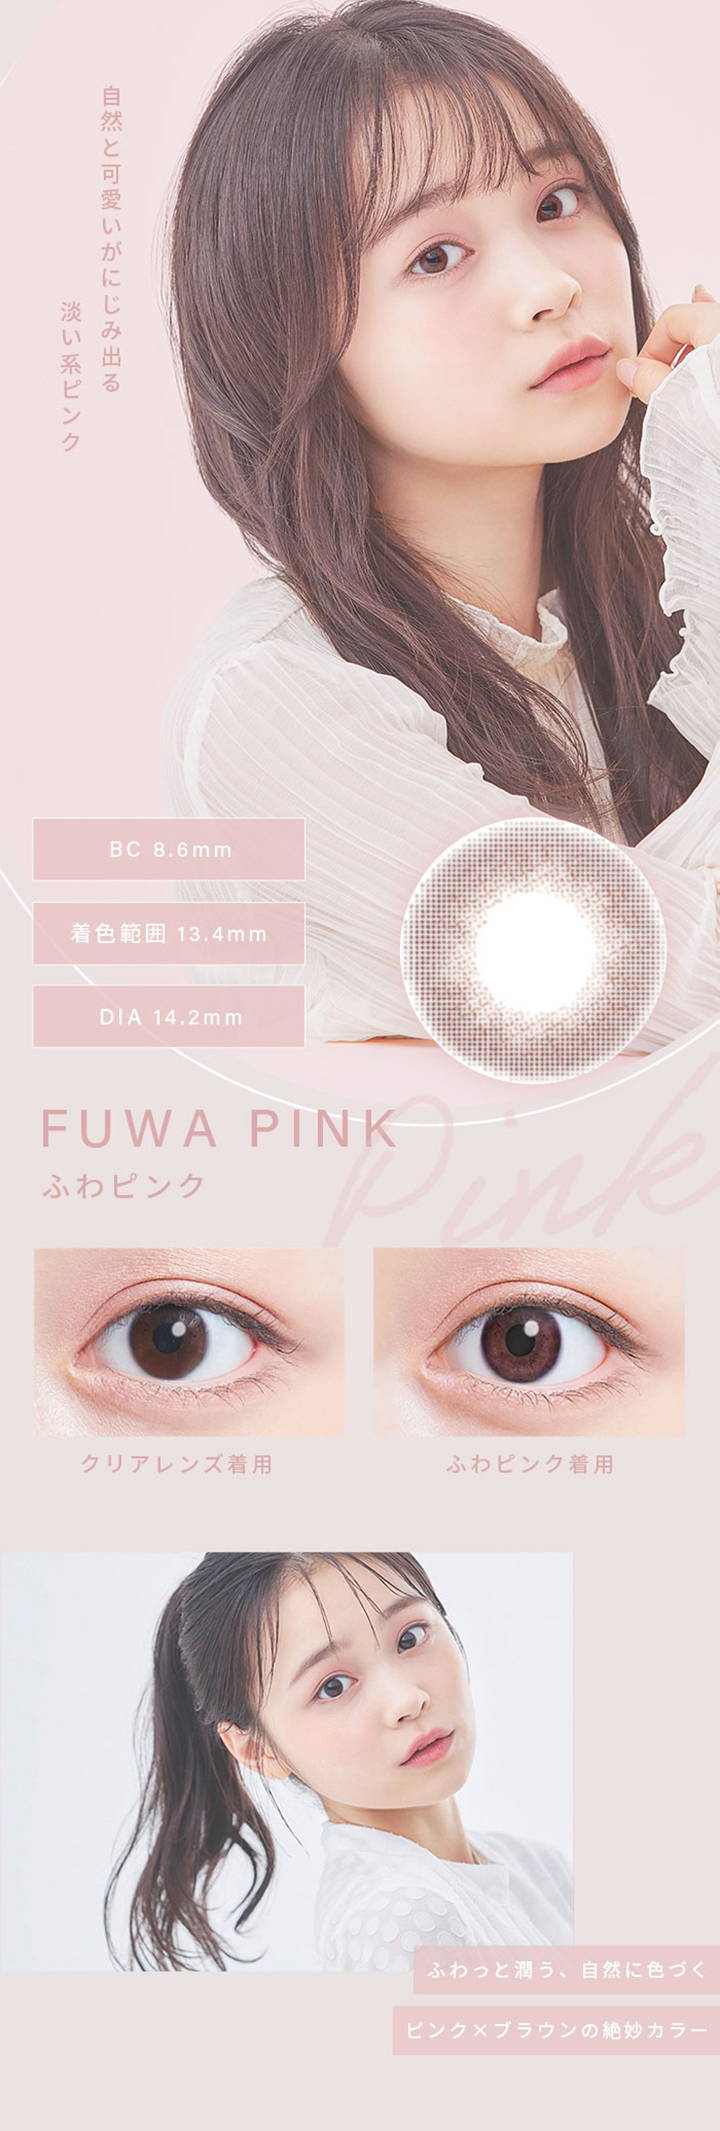 ふわピンク(FUWA PINK),自然と可愛いがにじみ出る淡い系ピンク,BC8.6mm,着色直径13.4mm,DIA14.2mm,クリアレンズとふわピンクの装用比較写真,ふわっと潤う、自然に色づくピンク×ブラウンの絶妙カラー|ふわナチュラル(FUWA NATURAL) ワンデーコンタクトレンズ